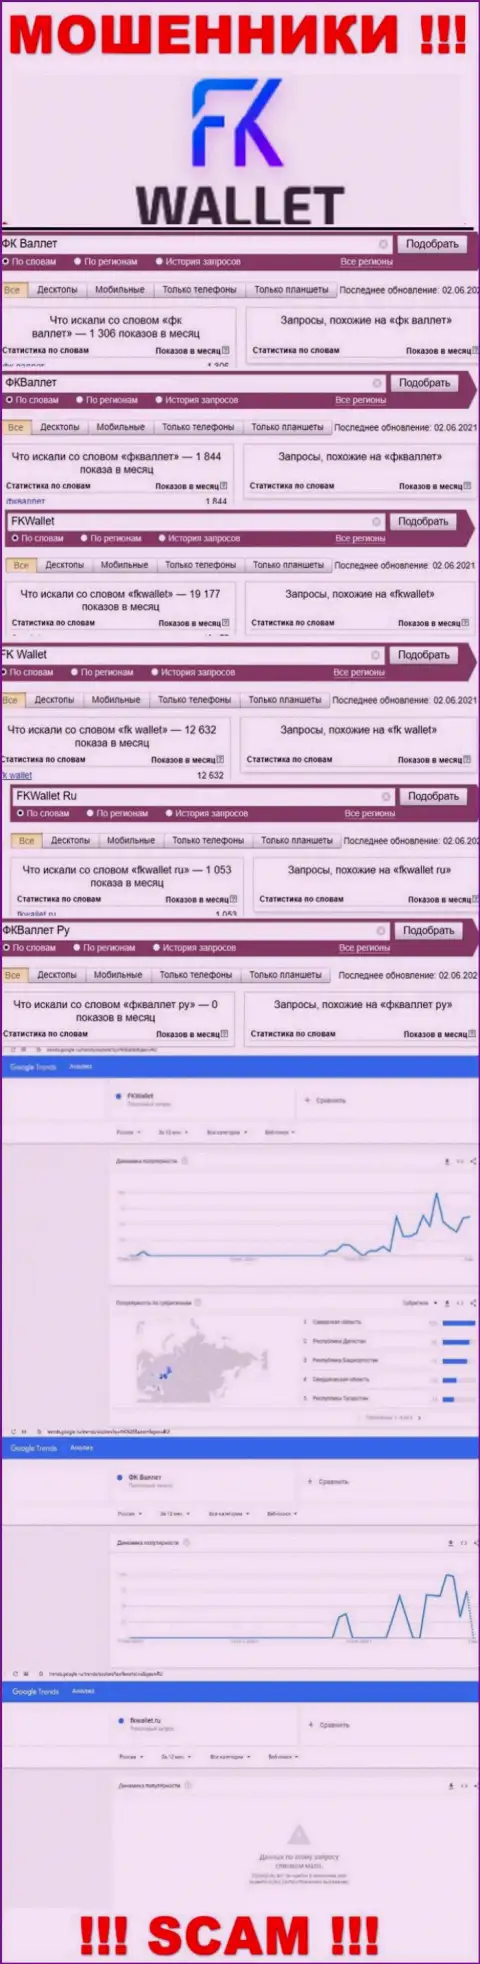 Скрин результатов online-запросов по мошеннической организации FKWallet